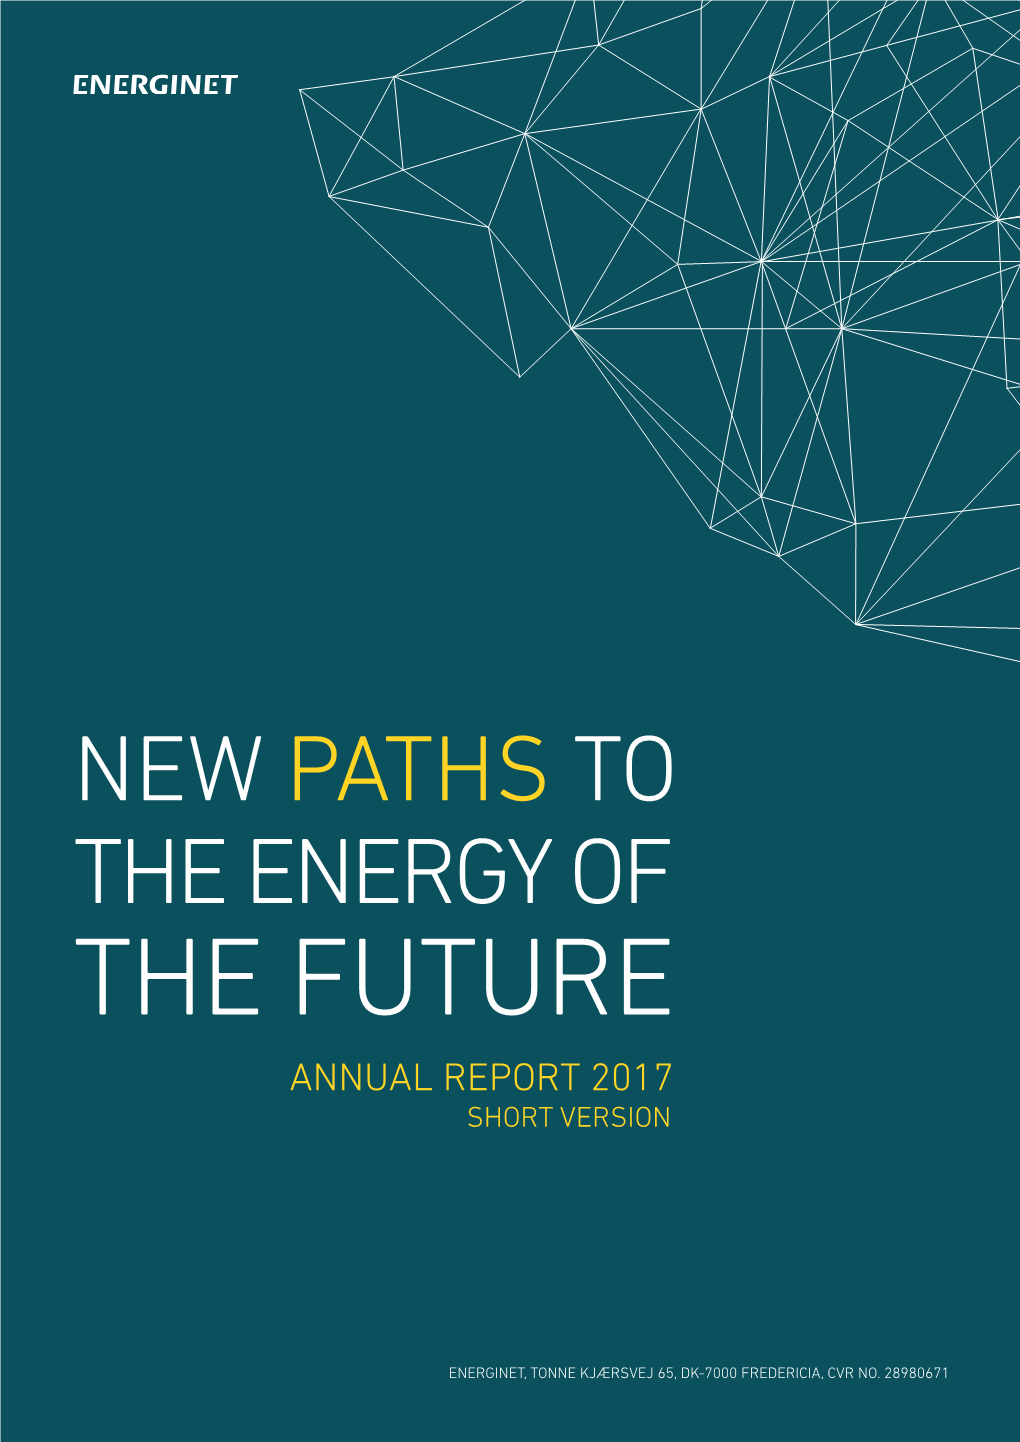 The Future Annual Report 2017 Short Version